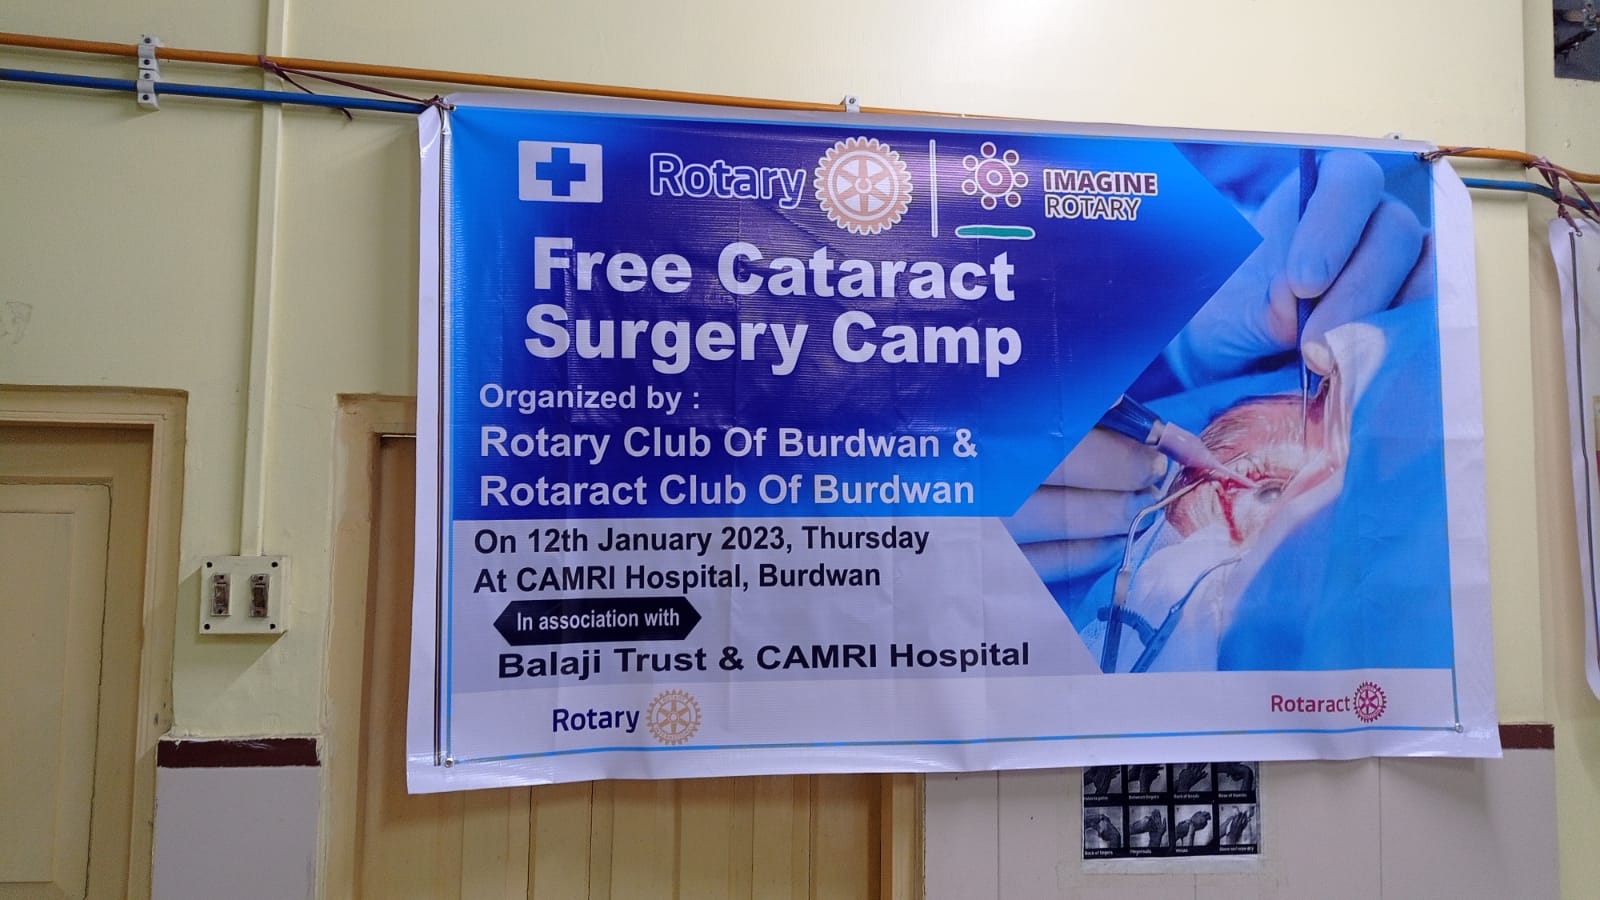 Free Cataract Surgery Camp at CAMRI Hospital.